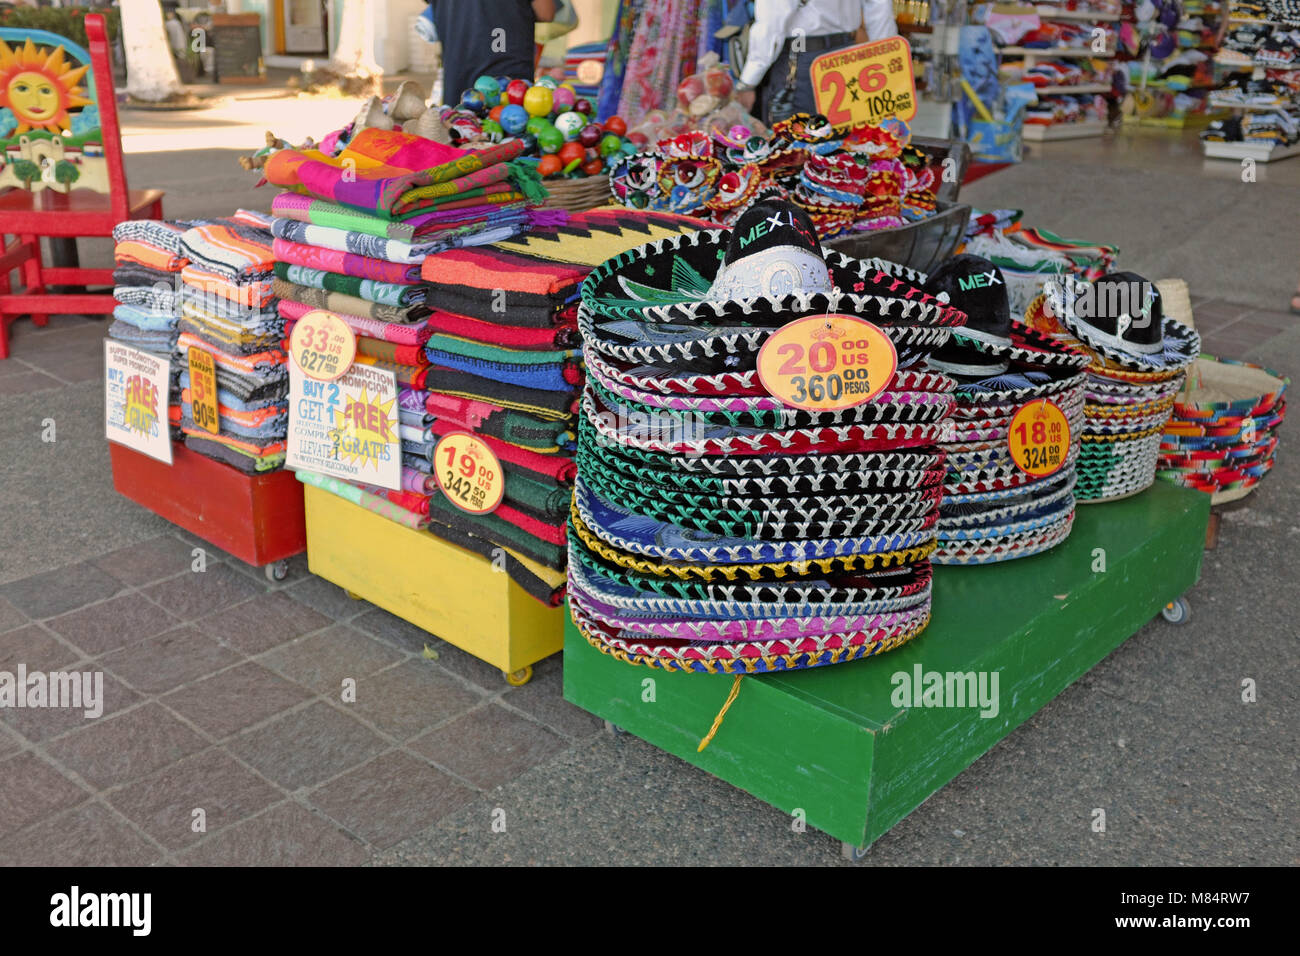 Souvenir turistici sul display sul Malecon Puerto Vallarta, Messico includono elementi associati con percepito la cultura Messicana compresi sombreros. Foto Stock